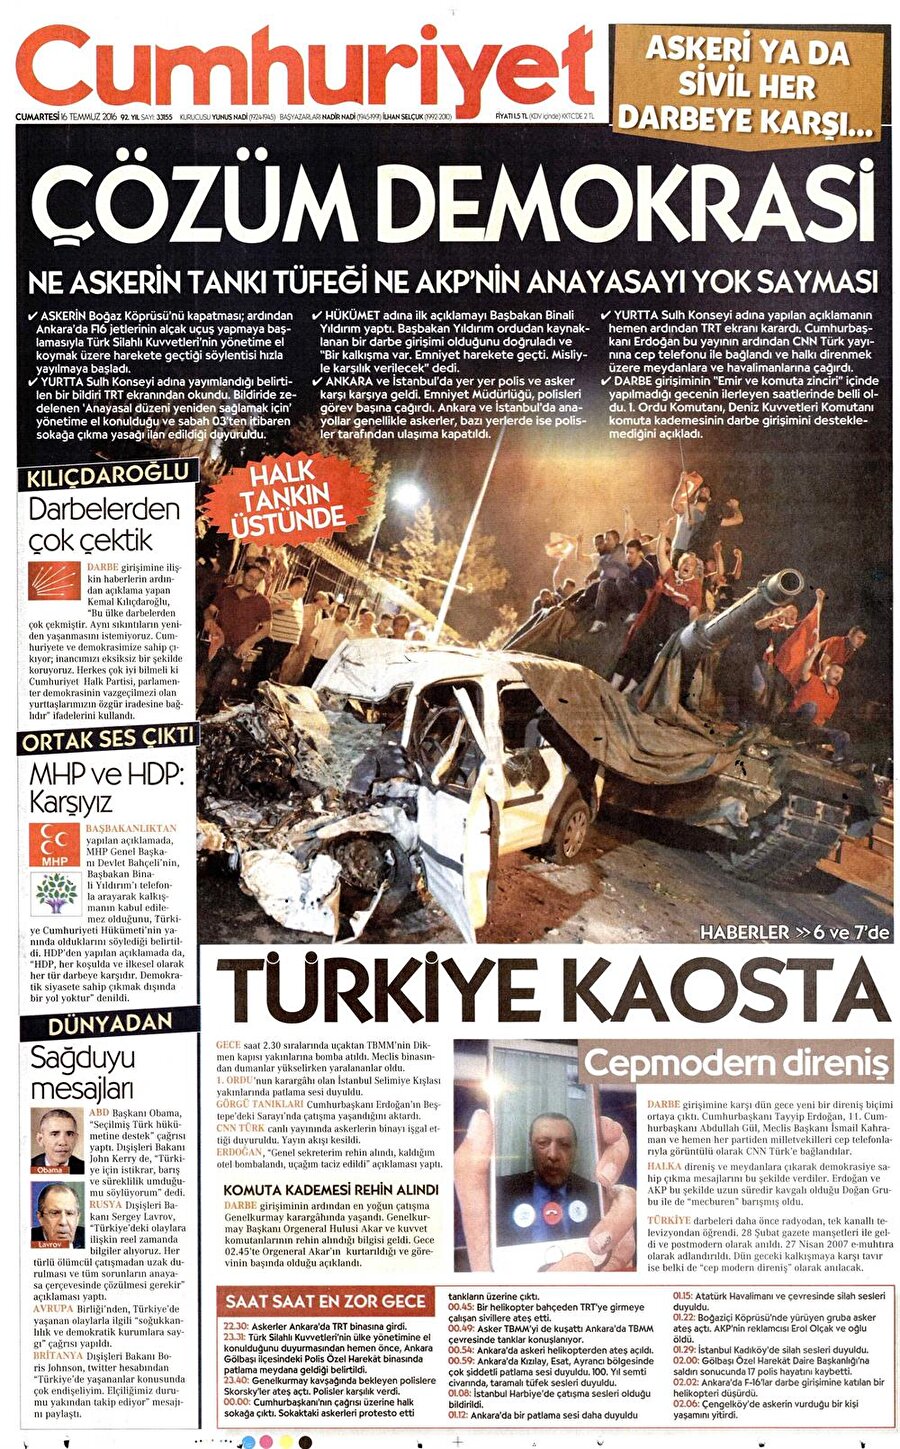 
                                    Gazetenin darbe karşıtı gösterileri "nefret'', FETÖ'den açığa alınıp ihraç edilenleri ''tasfiye'' olarak nitelendirdiği öne sürülerek, 8 Ağustos'ta ''Eksik Demokrasi'' manşetiyle ayrışmayı körüklemeye yol açabilecek şekilde Yenikapı mitinginin hedef alındığı savunuldu.

 Darbe girişiminin hemen ardından gazetenin, 16 Temmuz'da ''Türkiye Kaosta'' başlığıyla Cumhurbaşkanı Recep Tayyip Erdoğan'ın CNN Türk'e konuşmasını, "Doğan'la mecburi barış" olarak gösterdiği, ayrıca halkın askerlere karşı direnişini "kaos" olarak nitelendirdiği aktarıldı.

 Darbe girişimi sonrasında FETÖ'nün darbe nedenlerinden birinin de YAŞ kararları olduğu, gazetenin ise olayı 15 Temmuz darbe girişiminden 3 gün öncesinde "Tasfiye beklentisi-YAŞ'ta gündem paralel olacak" şeklindeki haberle duyurduğu kaydedildi.

                                